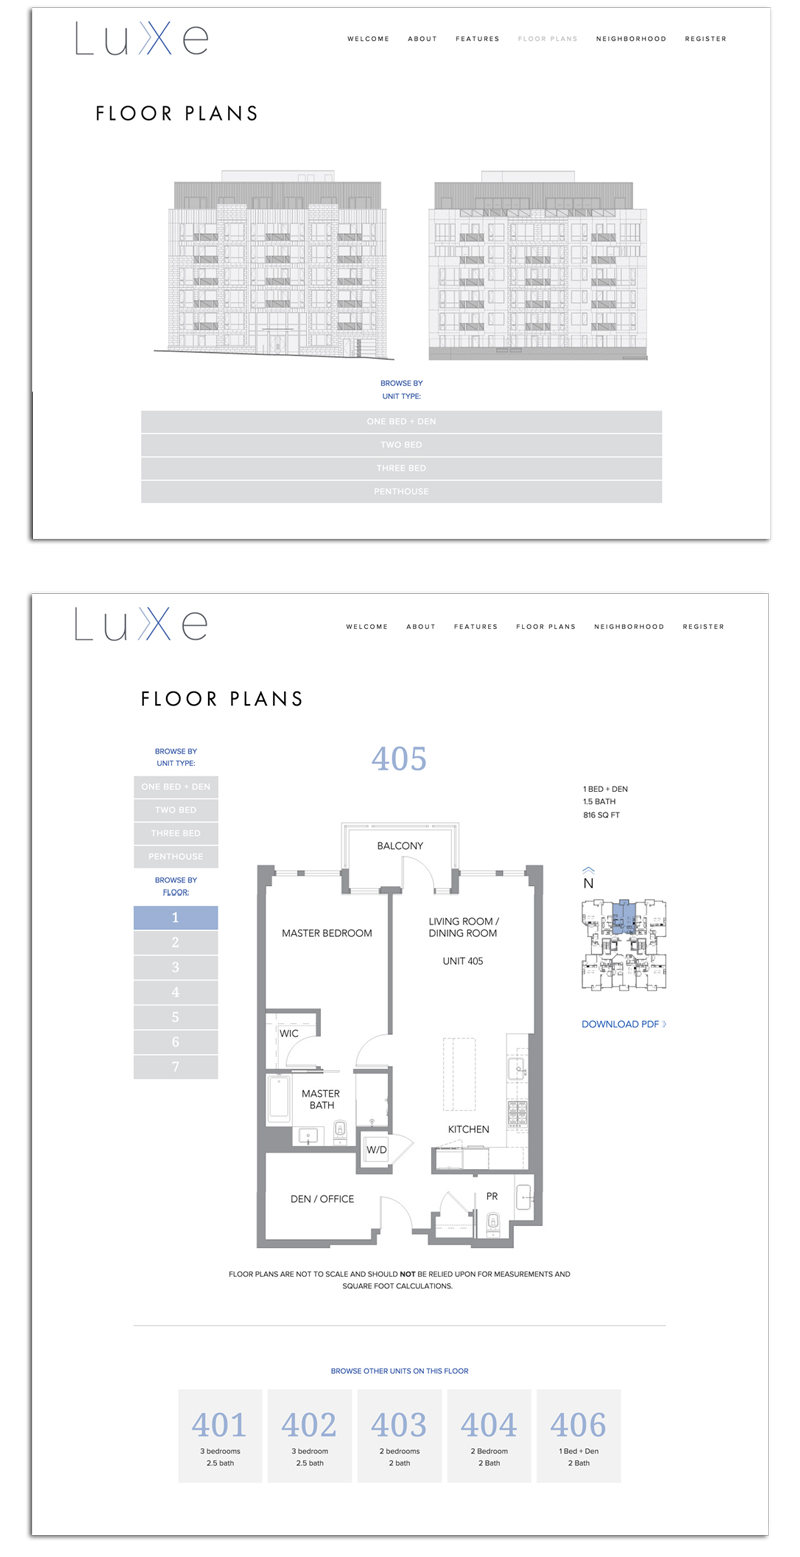 Portfolio_LuXe_Website_Floorplans.png